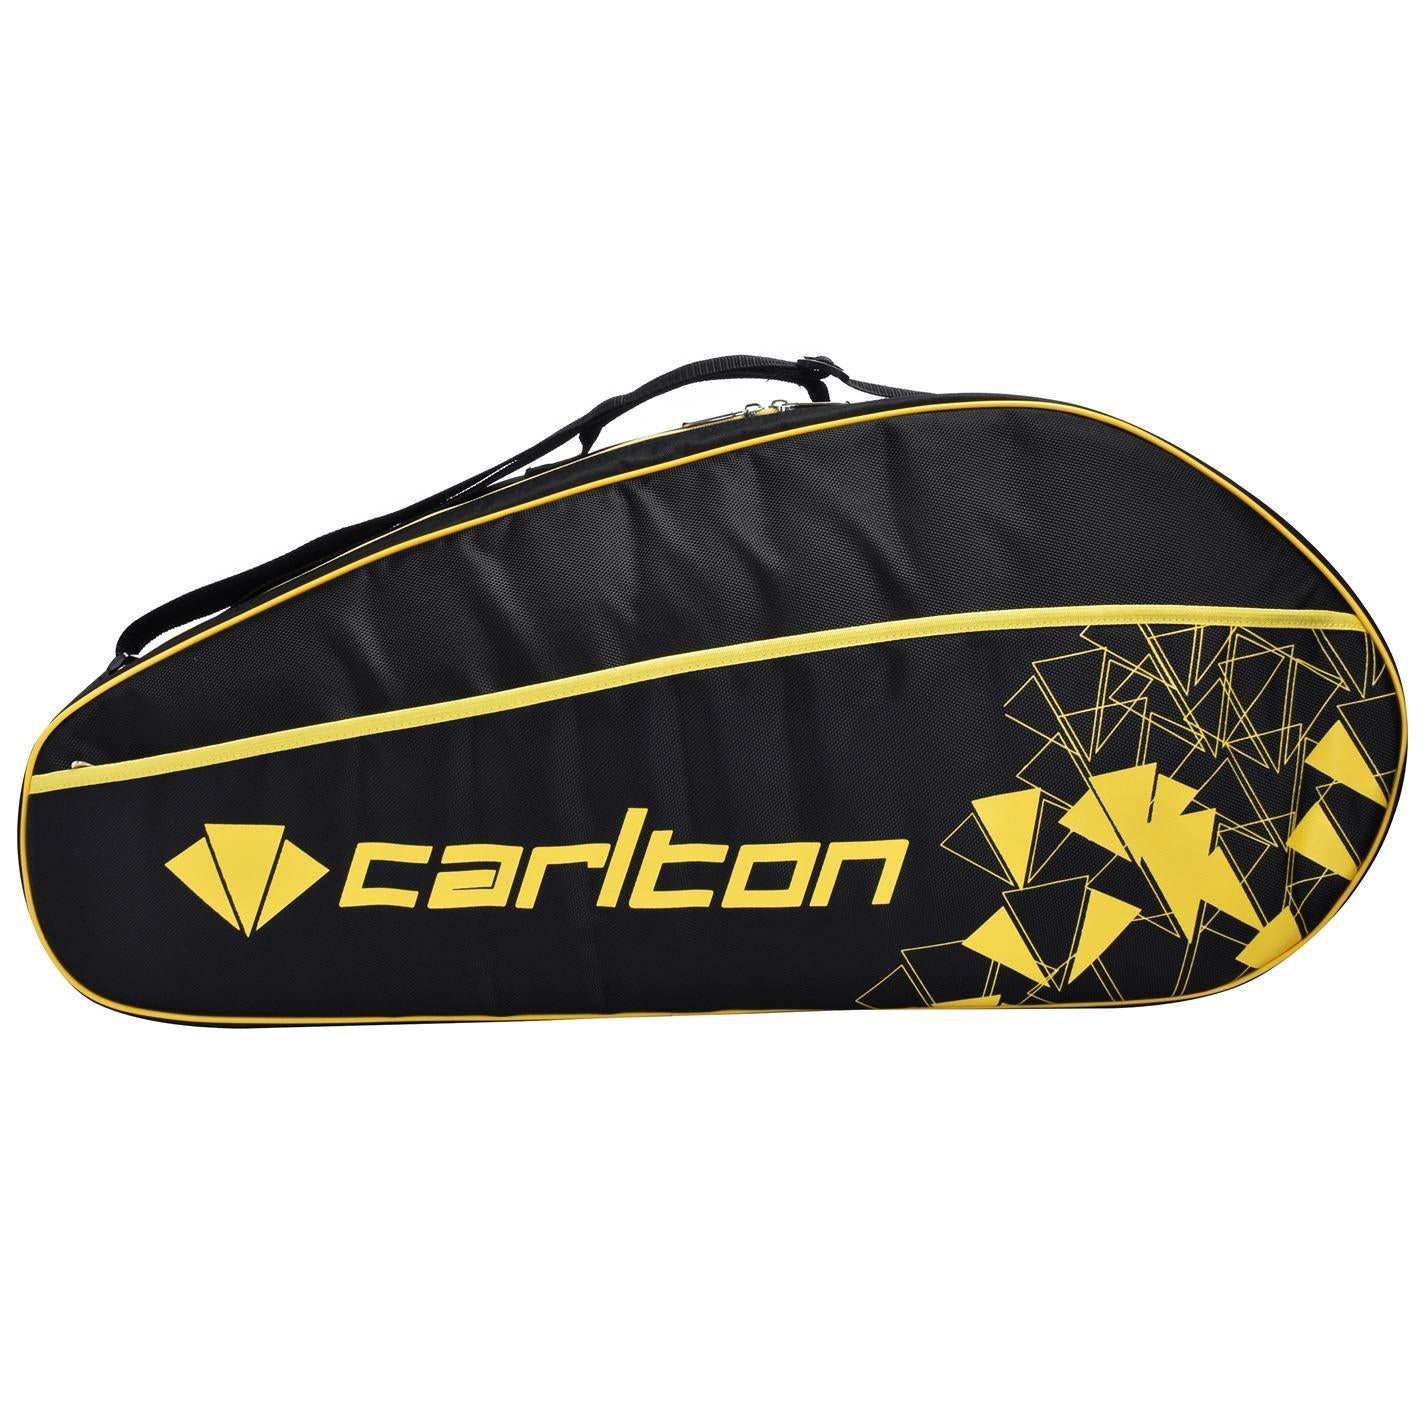 Carlton Badminton Bags  krishbadminton